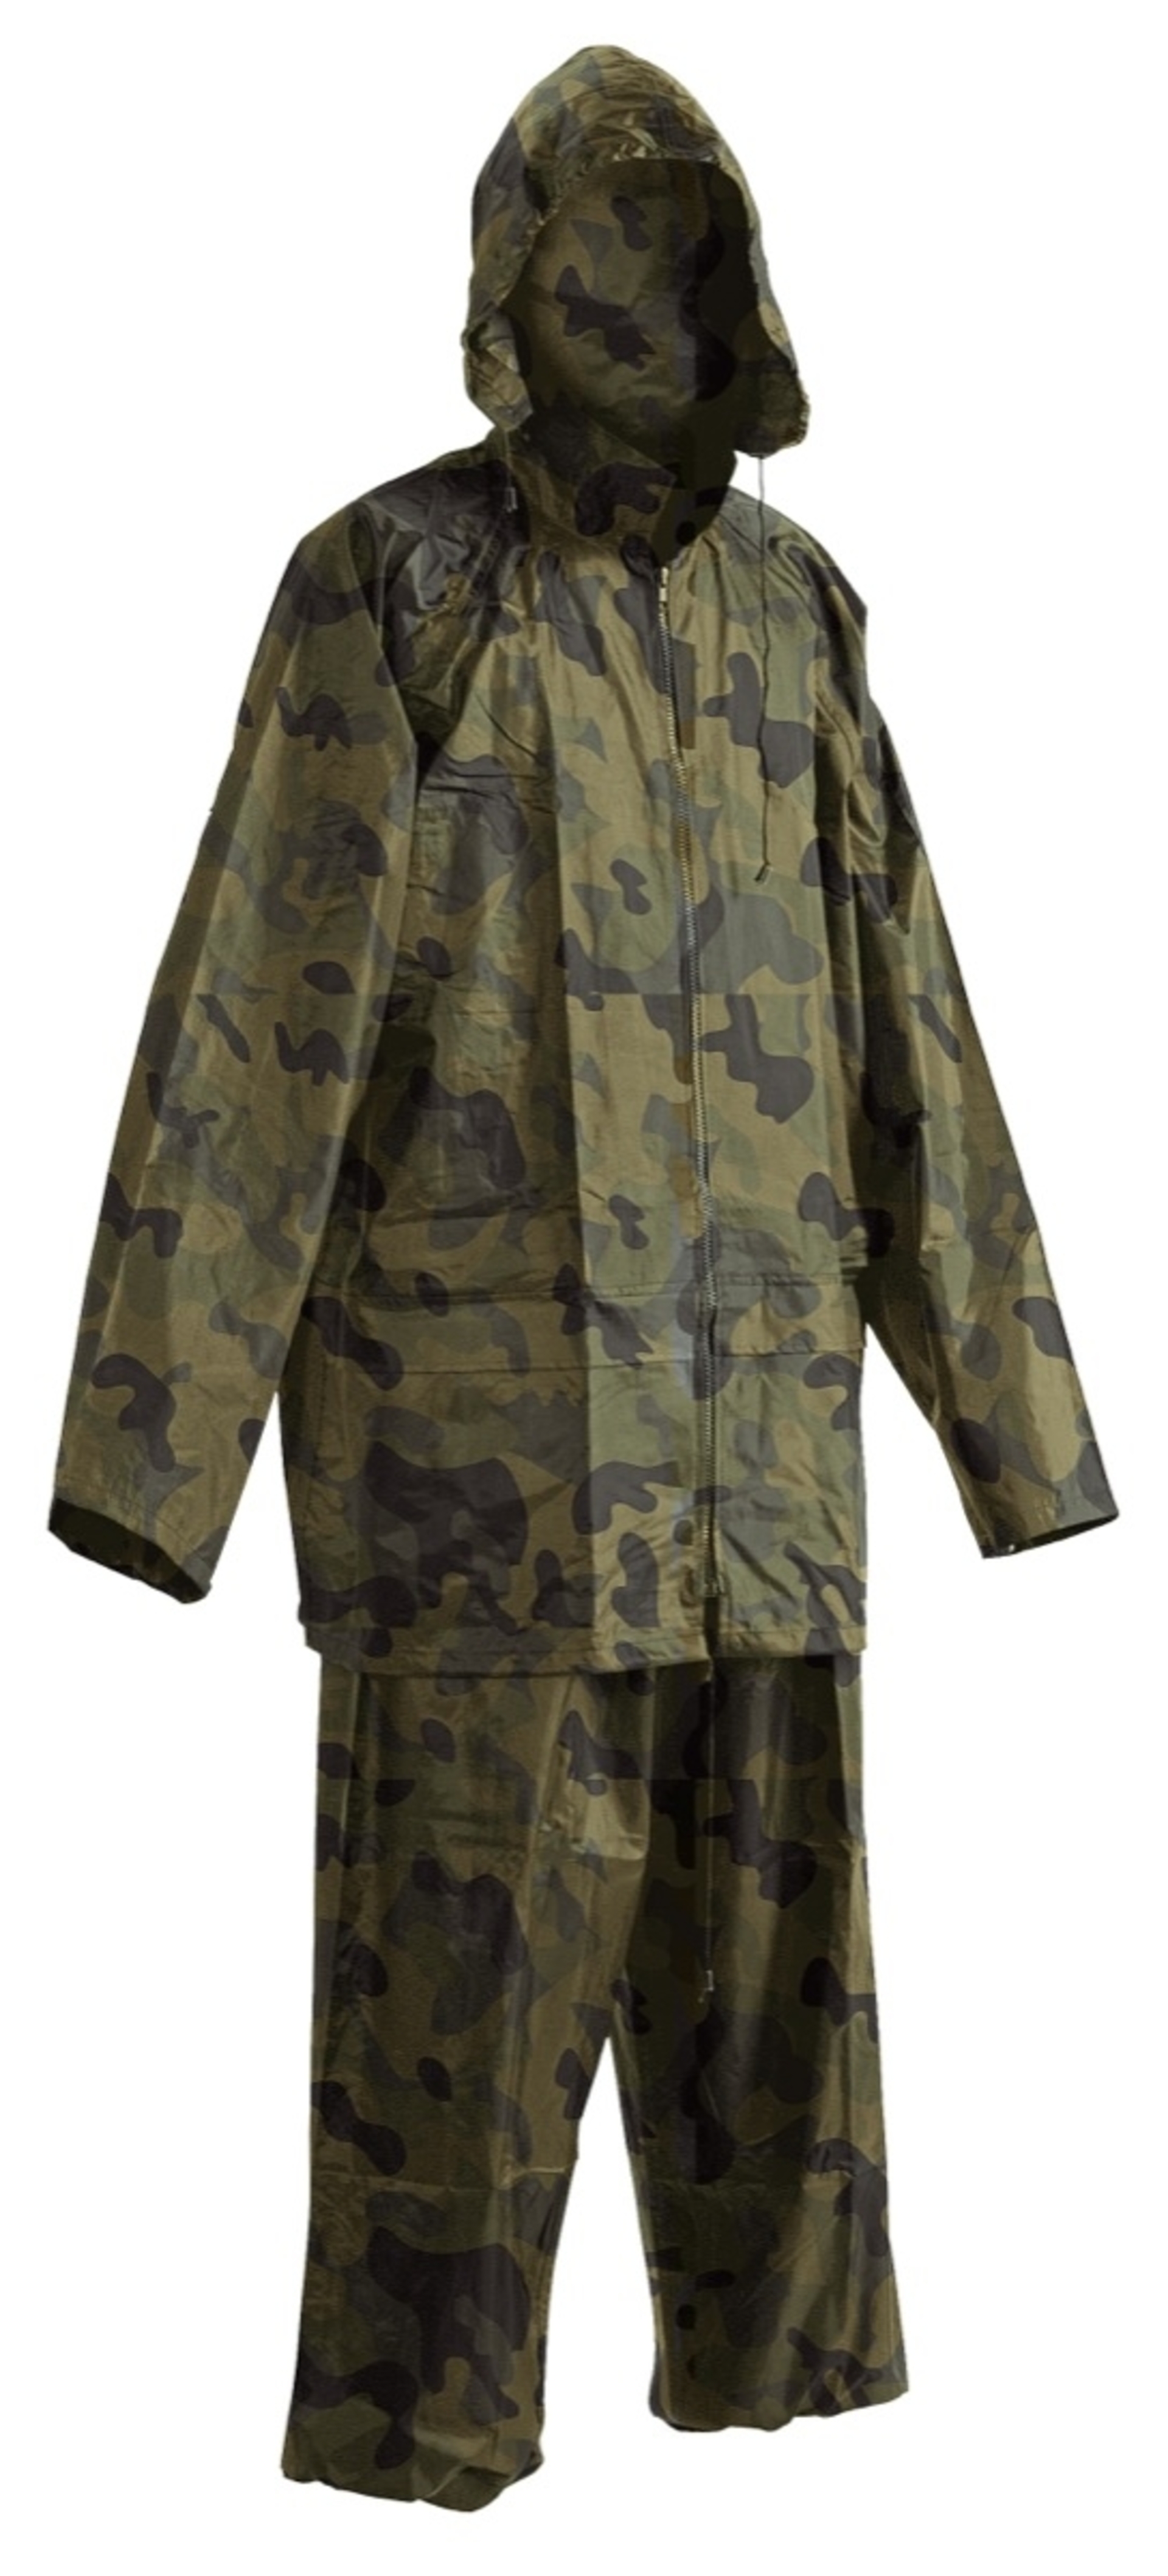 Cerva CARINA Oblek nepromokavý camouflage M + Bezplatné vrácení zboží